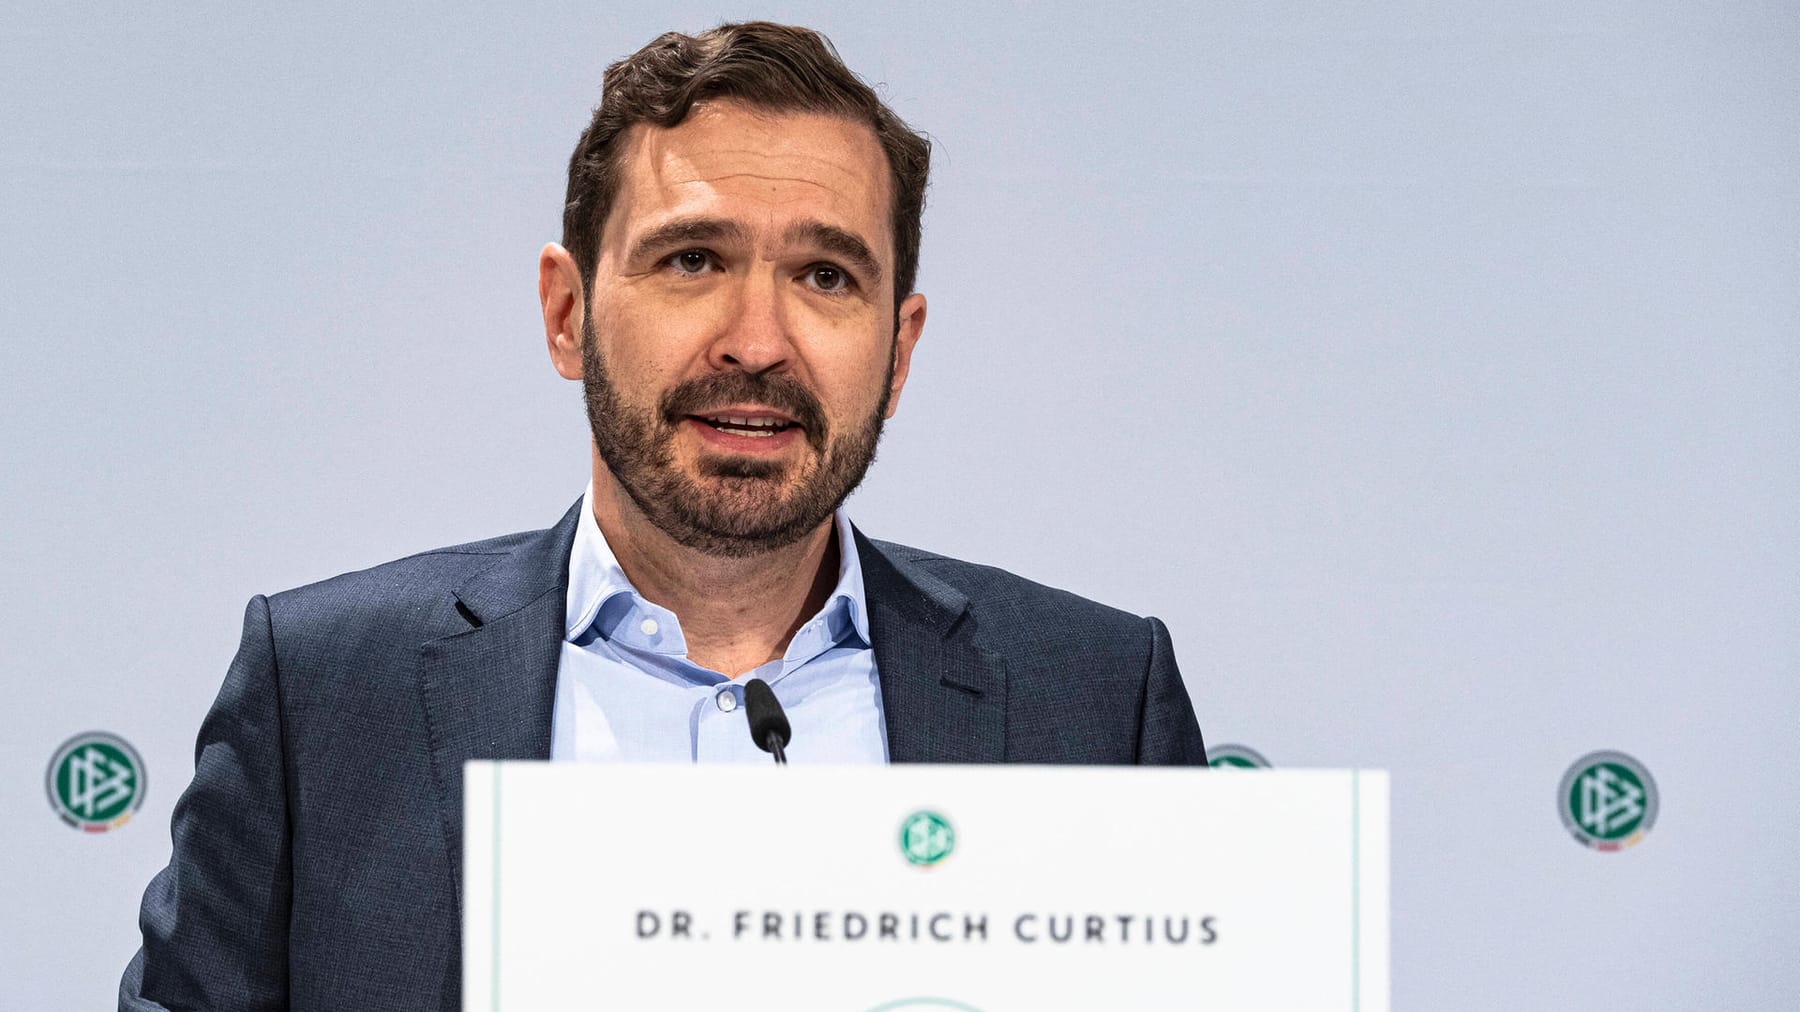 DFB: Wikipedia-Eintrag von Curtius erkauft? Enzyklopädie fordert Aufklärung